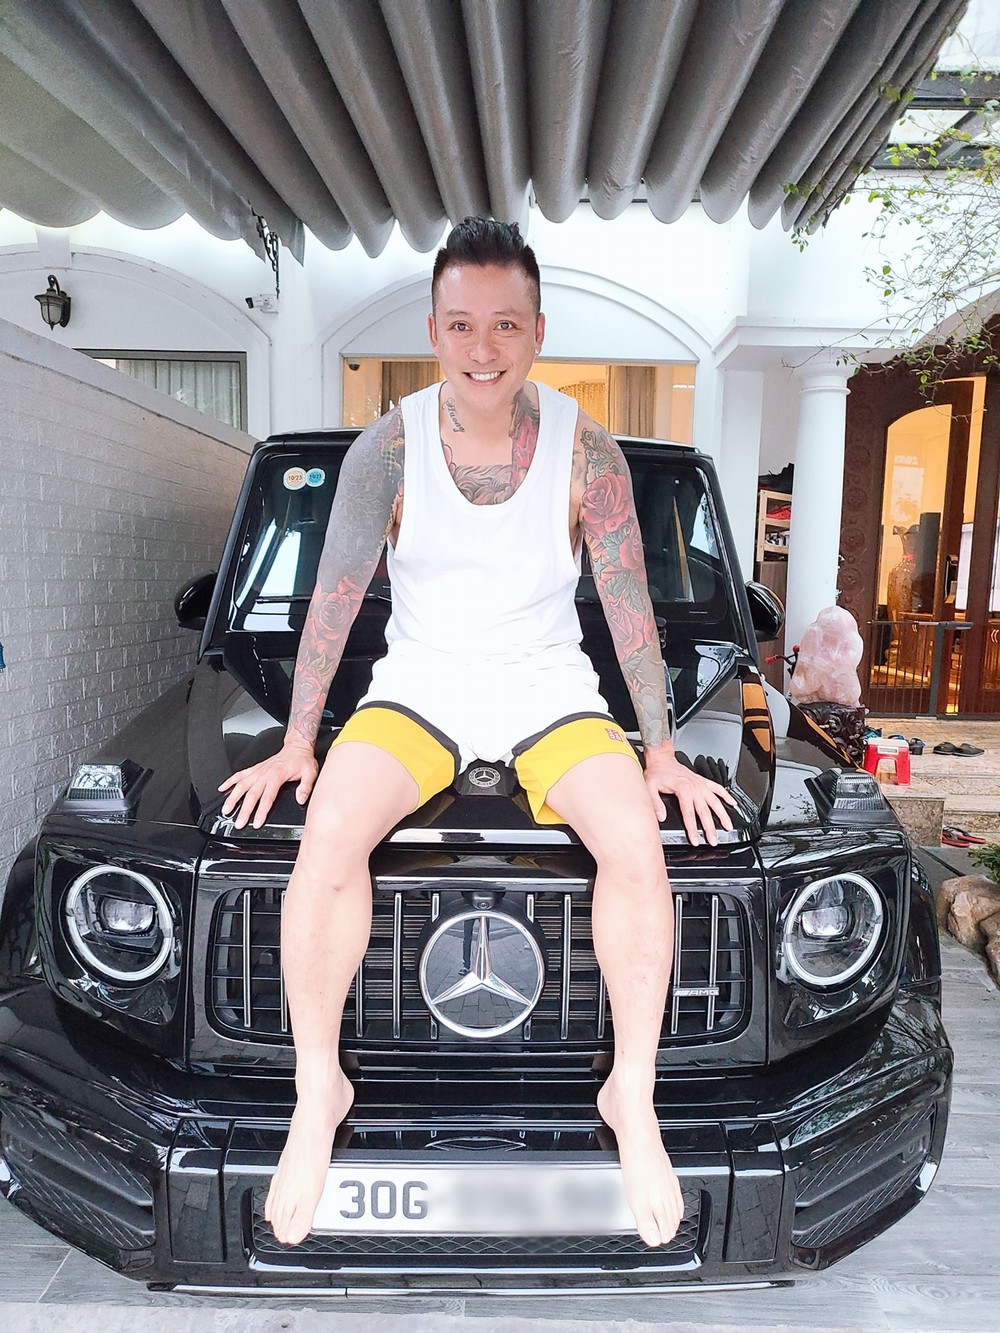 Tuấn Hưng chia sẻ hình ảnh chụp cùng chiếc xe SUV hạng sang Mercedes-AMG G63 mới mua từ một người bạn chuyên bán siêu xe và xe sang ở Hà Nội